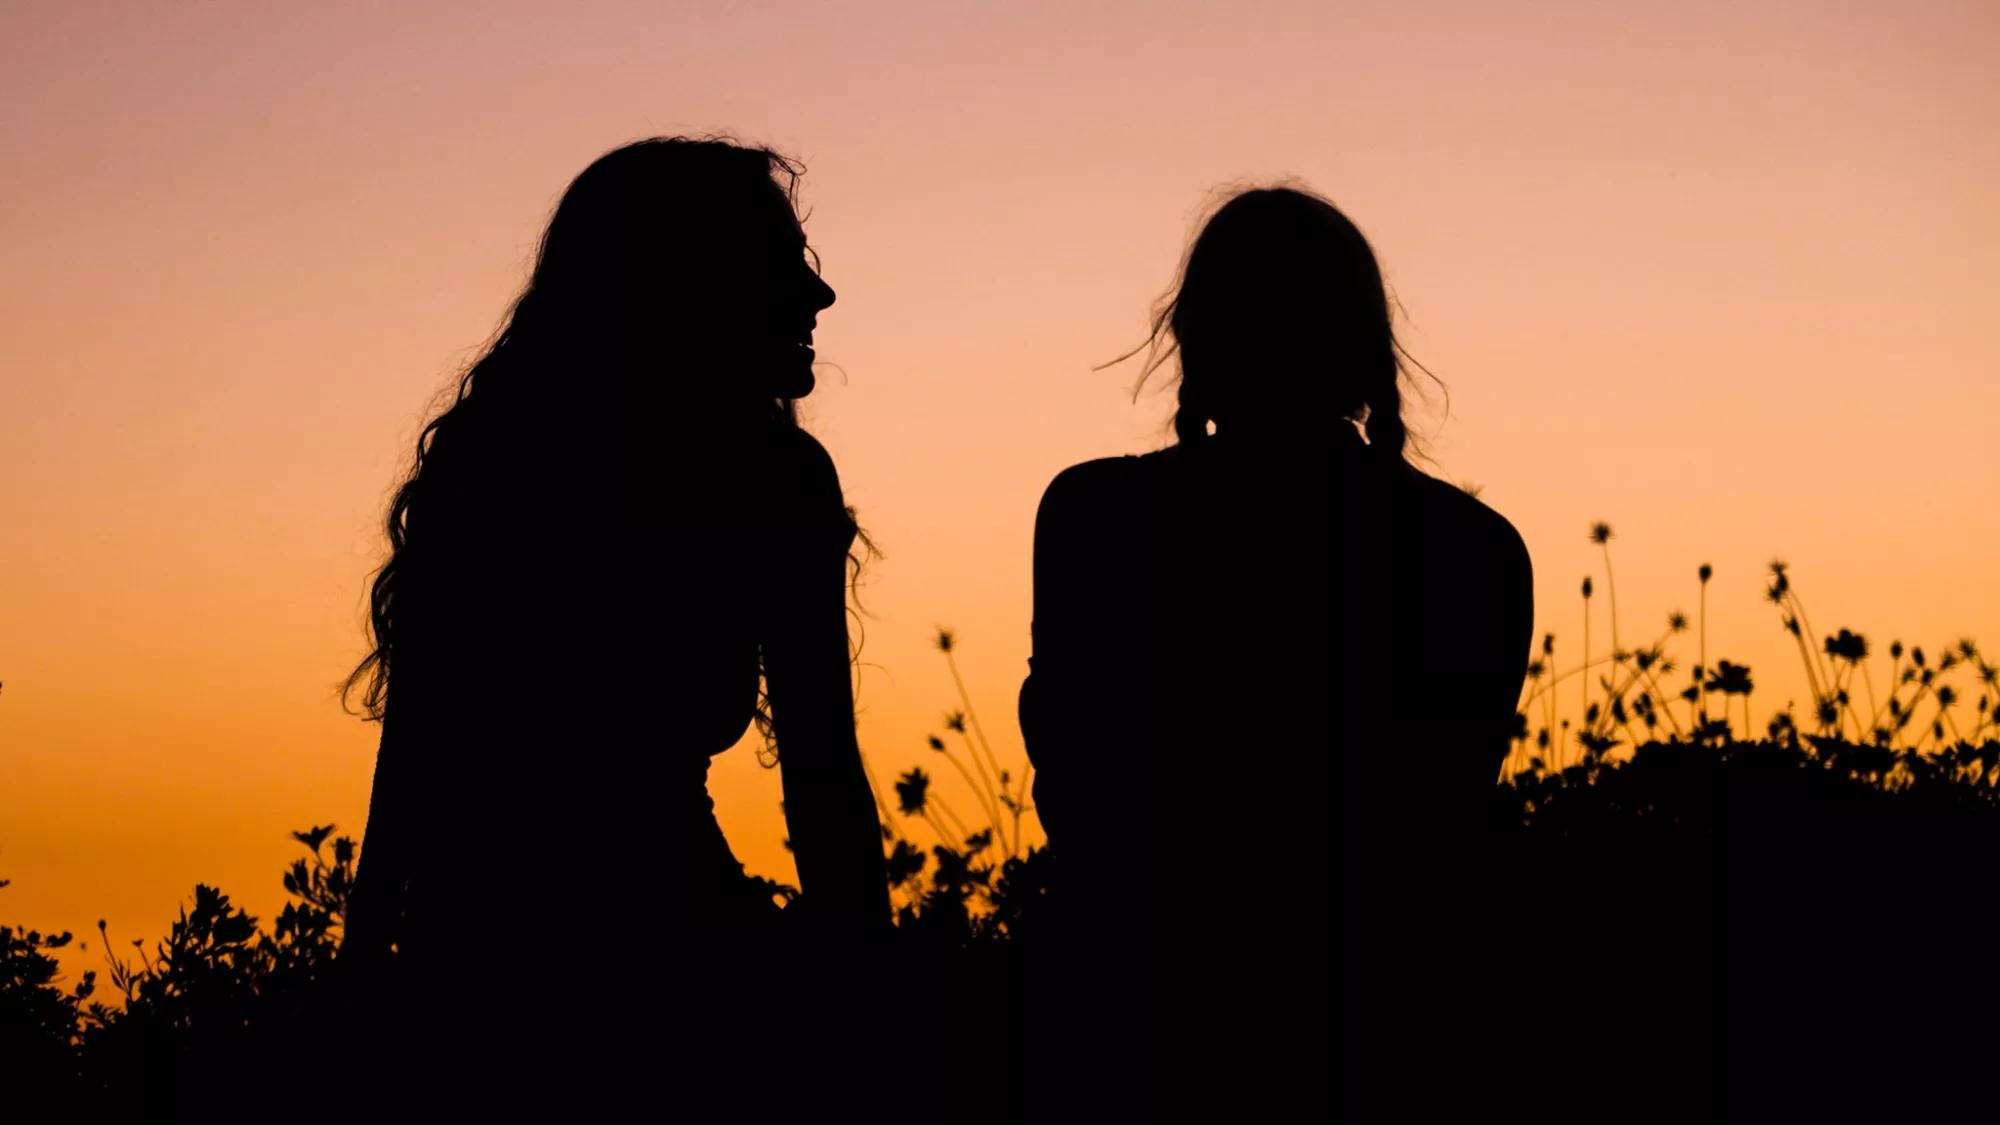 两个长发的人在聊天，夕阳映衬出他们的剪影